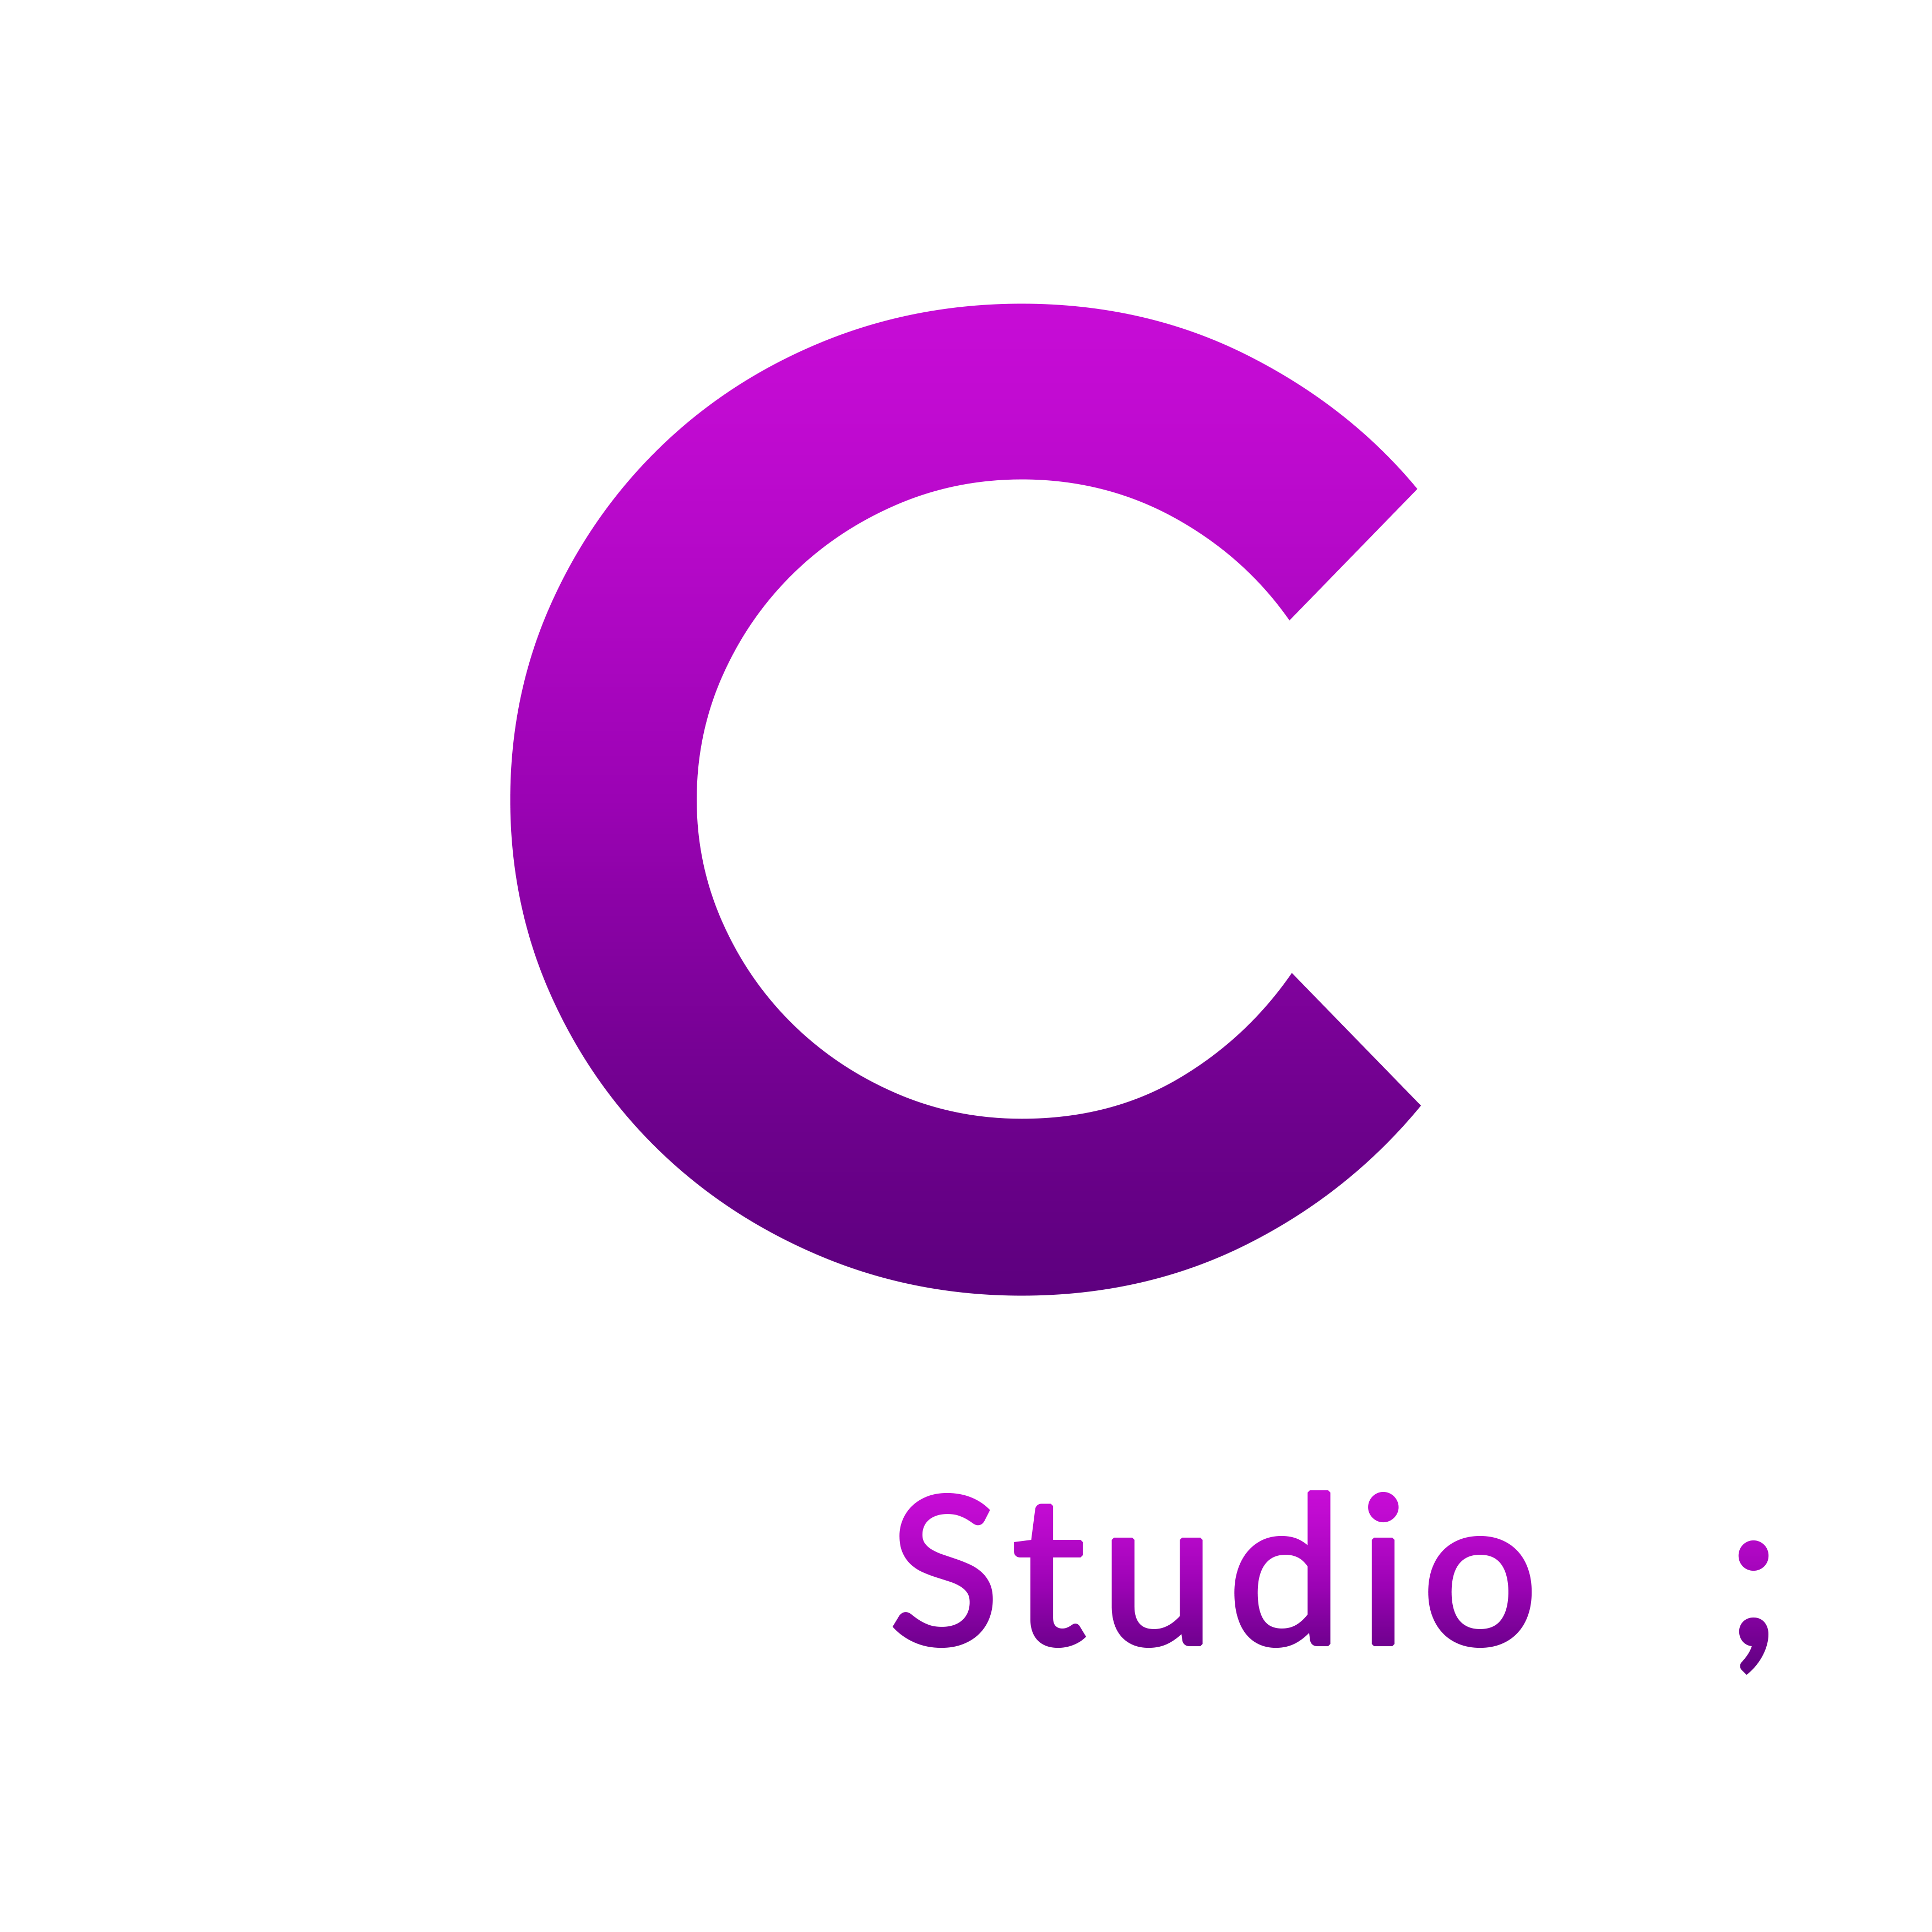 Coding.Studio();